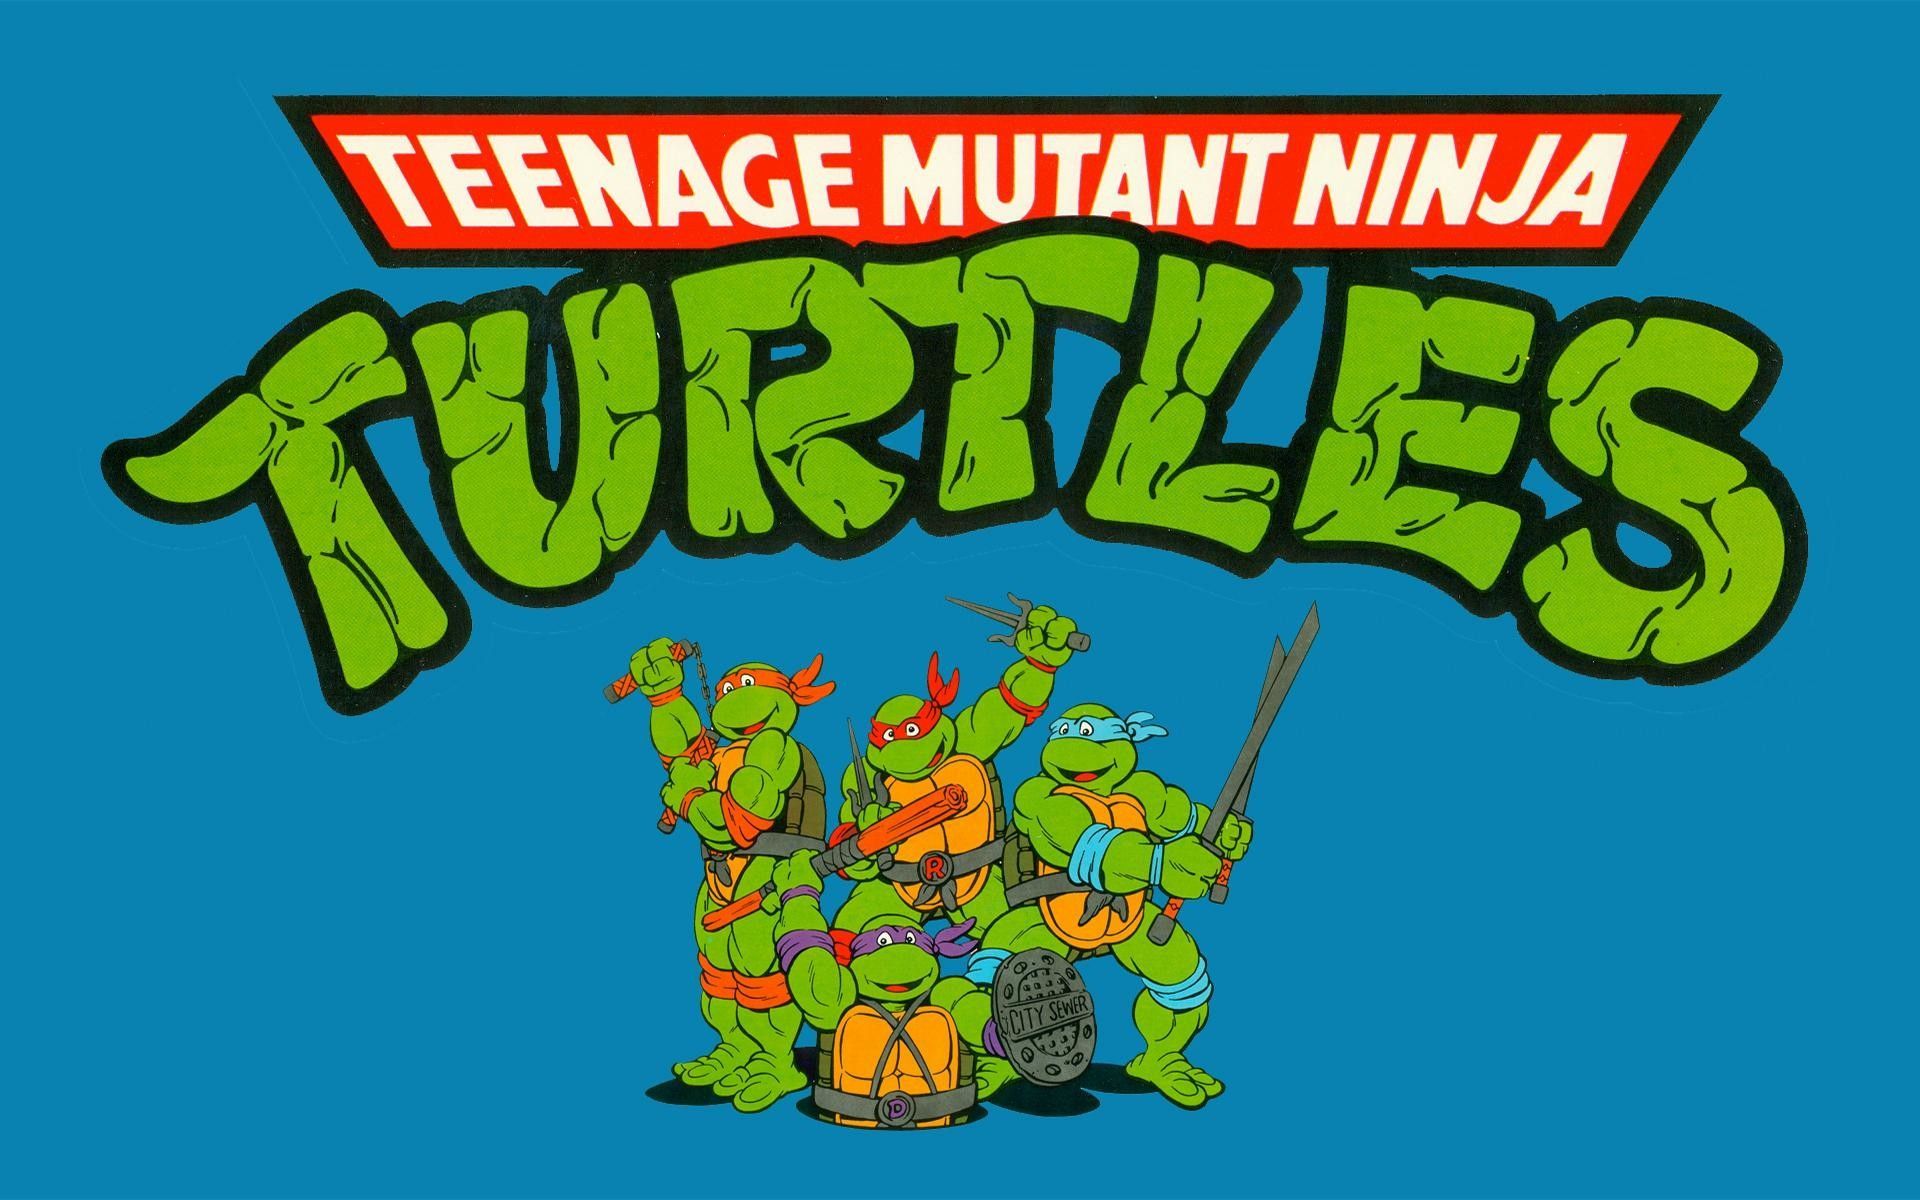 Teenage Mutant Ninja Turtles 1987 Wallpaper Free Teenage Mutant Ninja Turtles 1987 Background